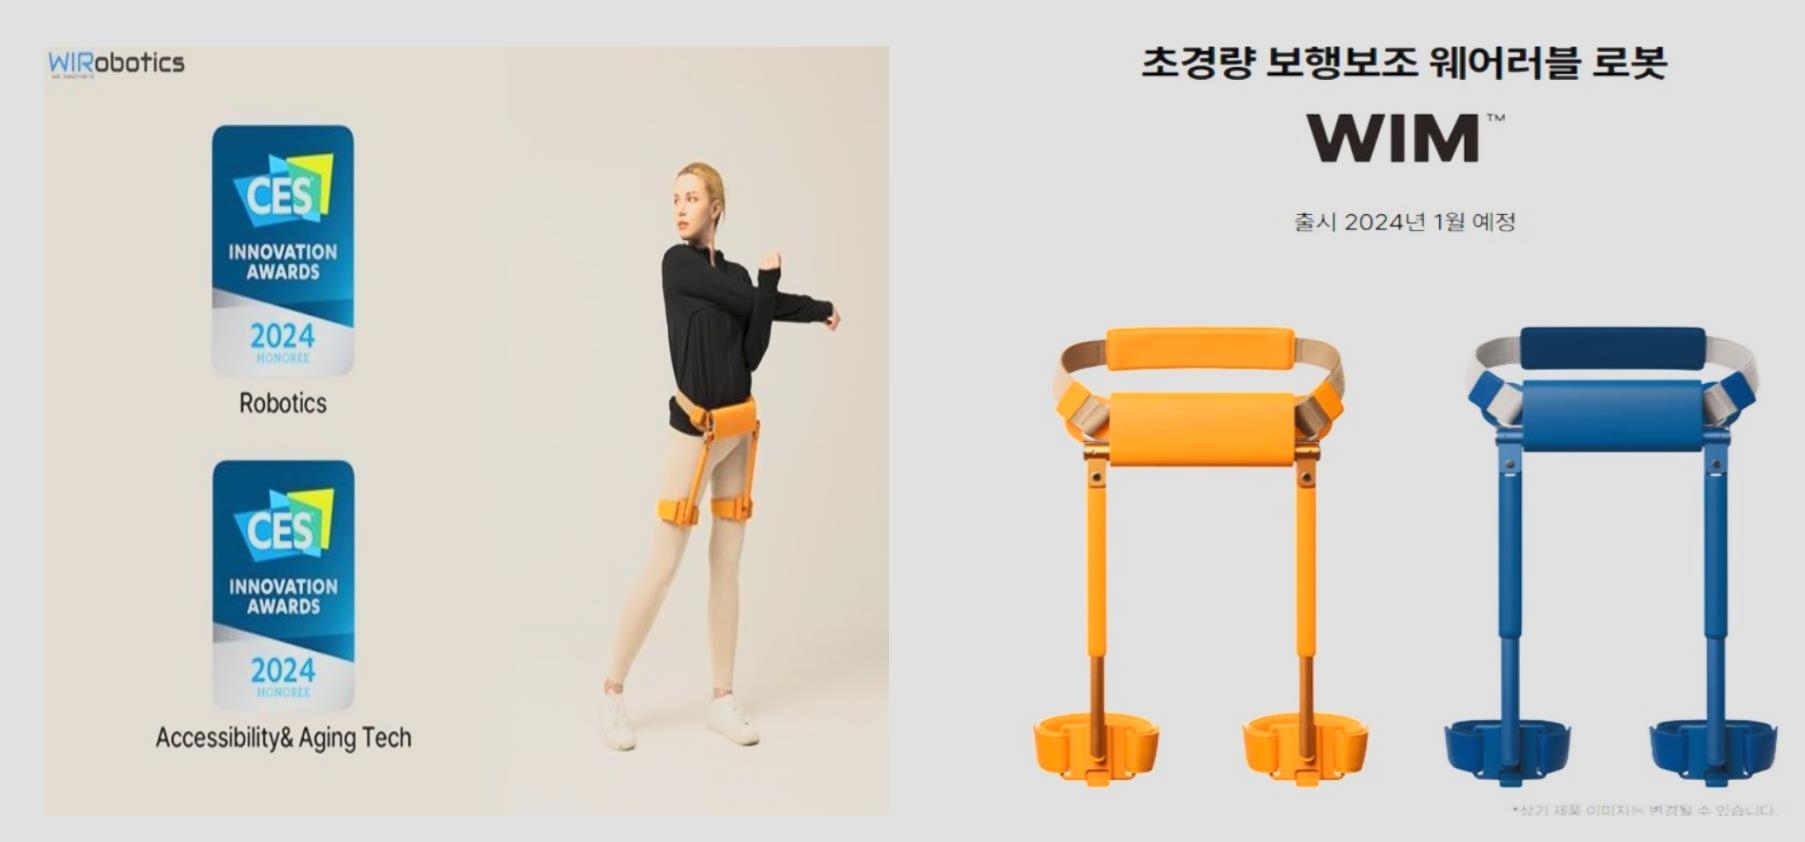 혁신상을 받은 경량 보행보조 웨어러블(Wearable) 로봇 ‘윔’. 한기대 제공